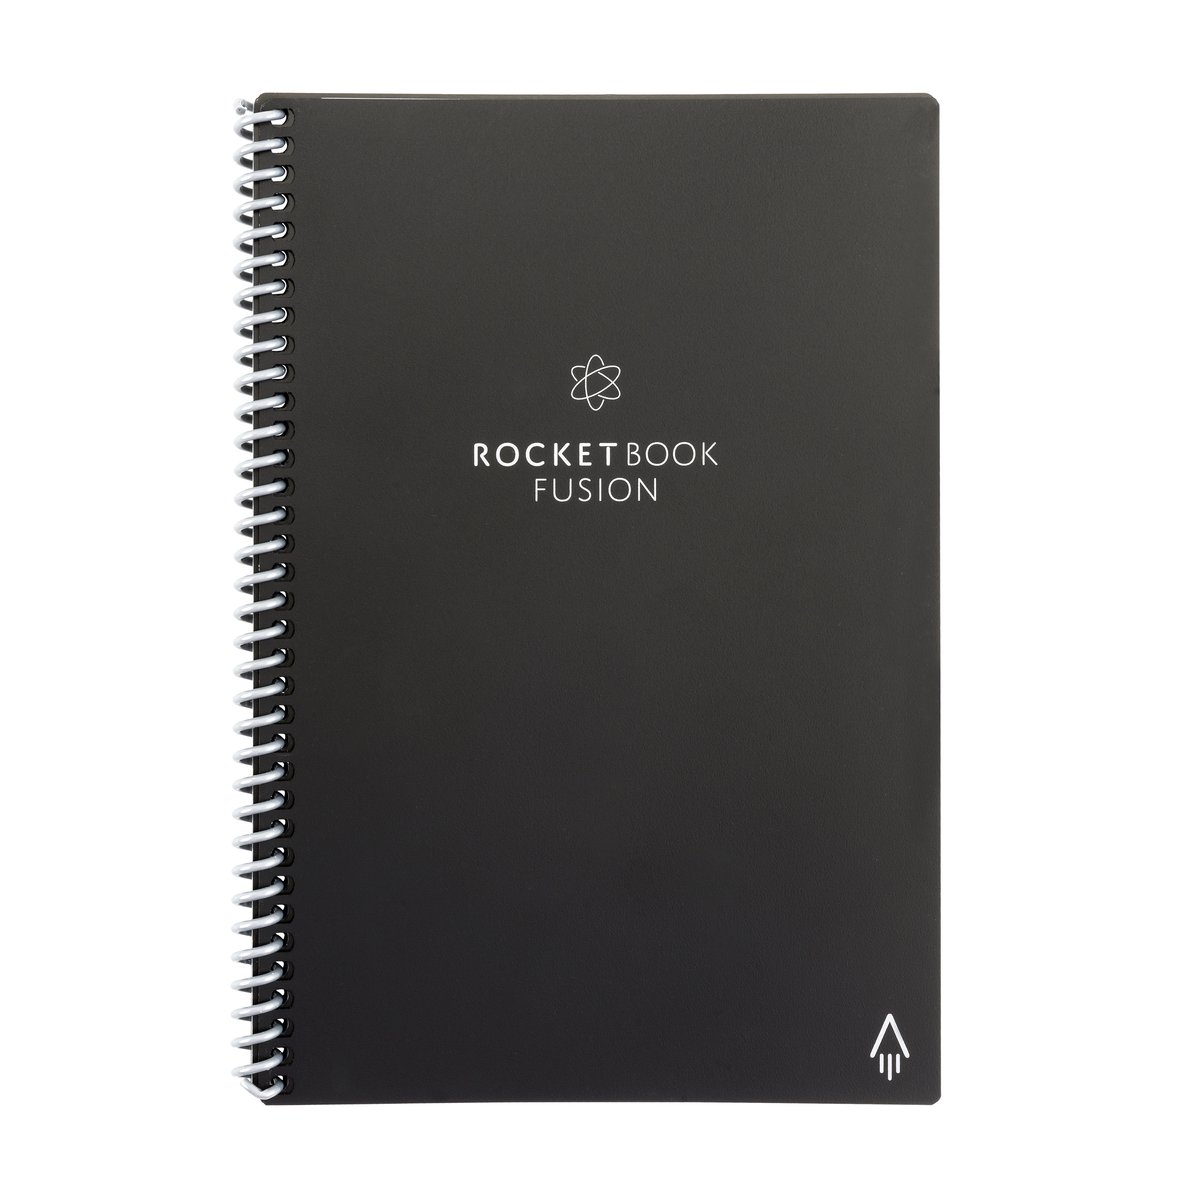 ROCKETBOOK FUSION EXECUTIVE - Rocketbook